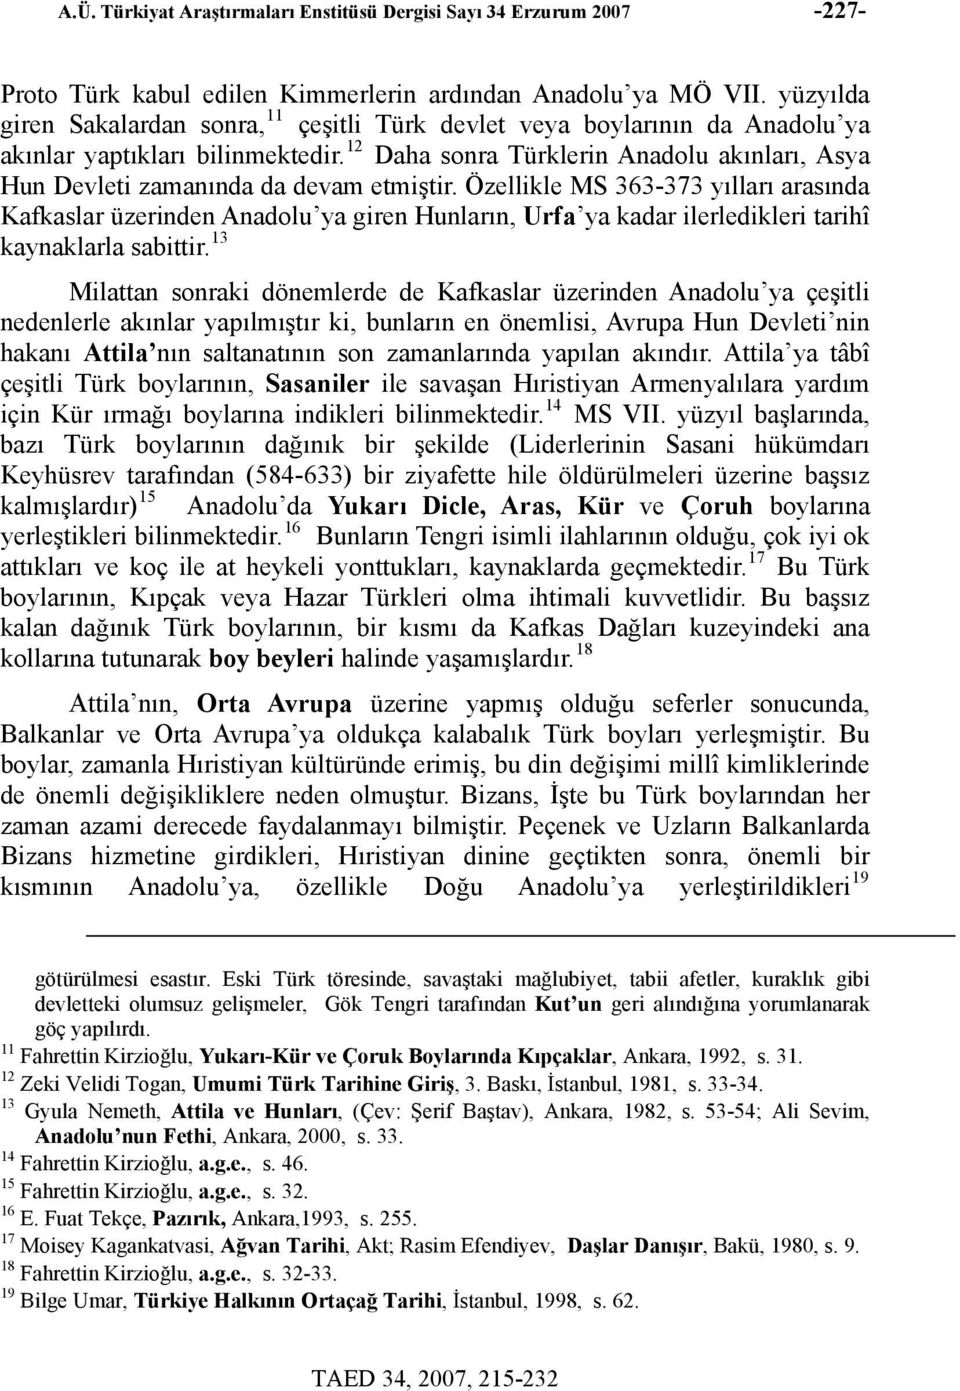 12 Daha sonra Türklerin Anadolu akınları, Asya Hun Devleti zamanında da devam etmiştir.